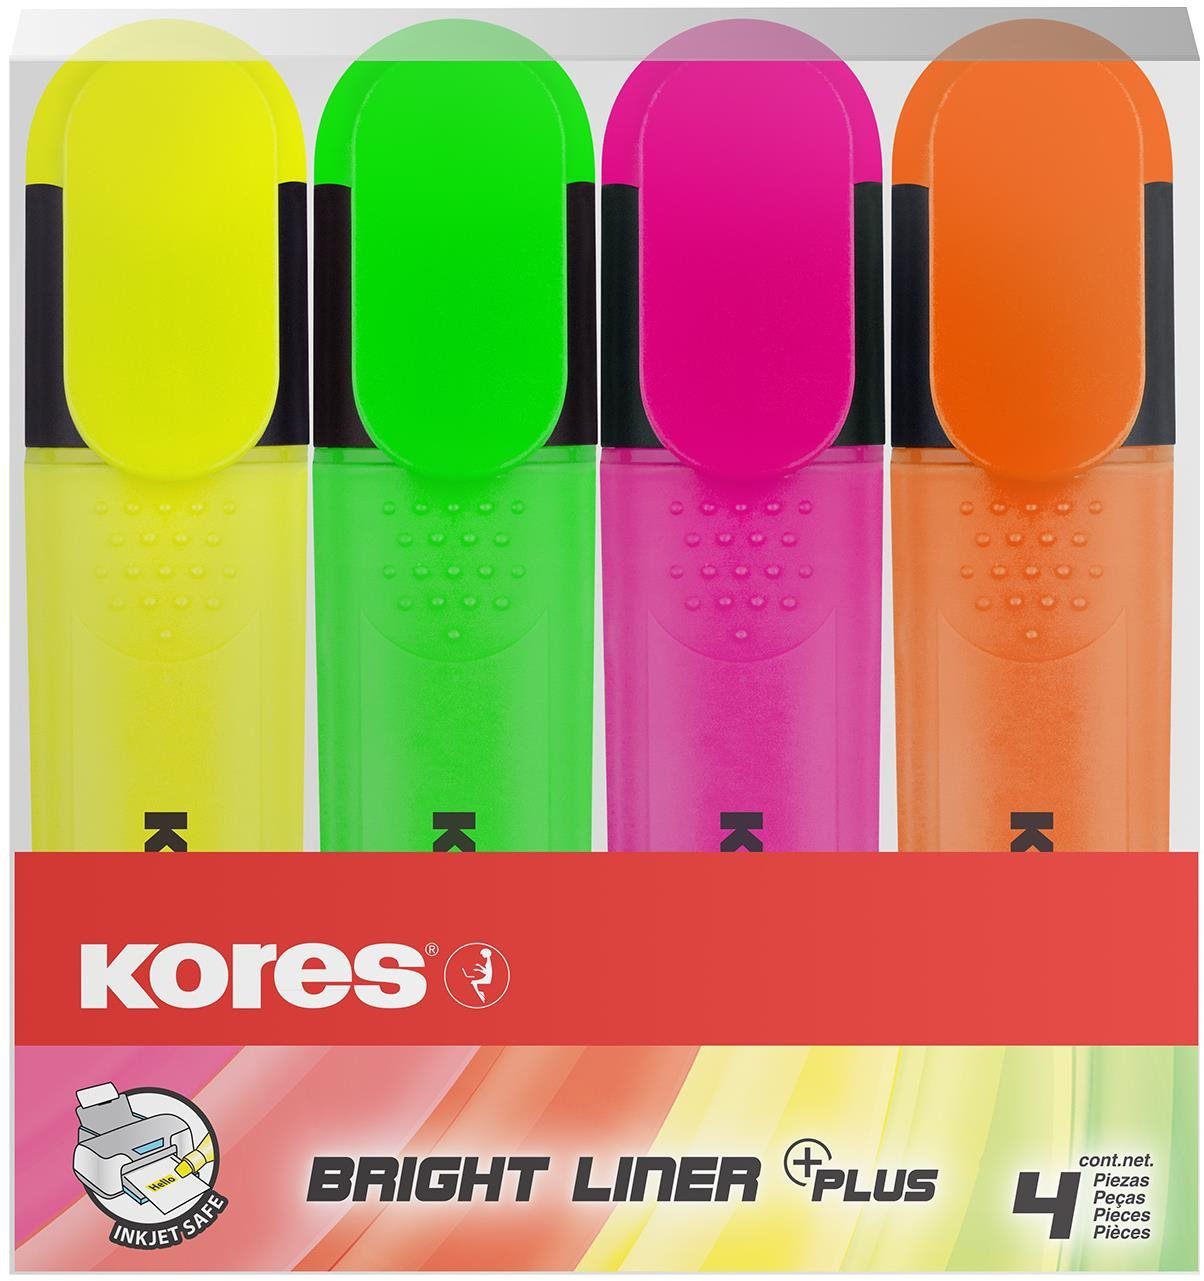 KORES BRIGHT LINER PLUS 4 színből álló szett (sárga, rózsaszín, narancsszín, zöld)